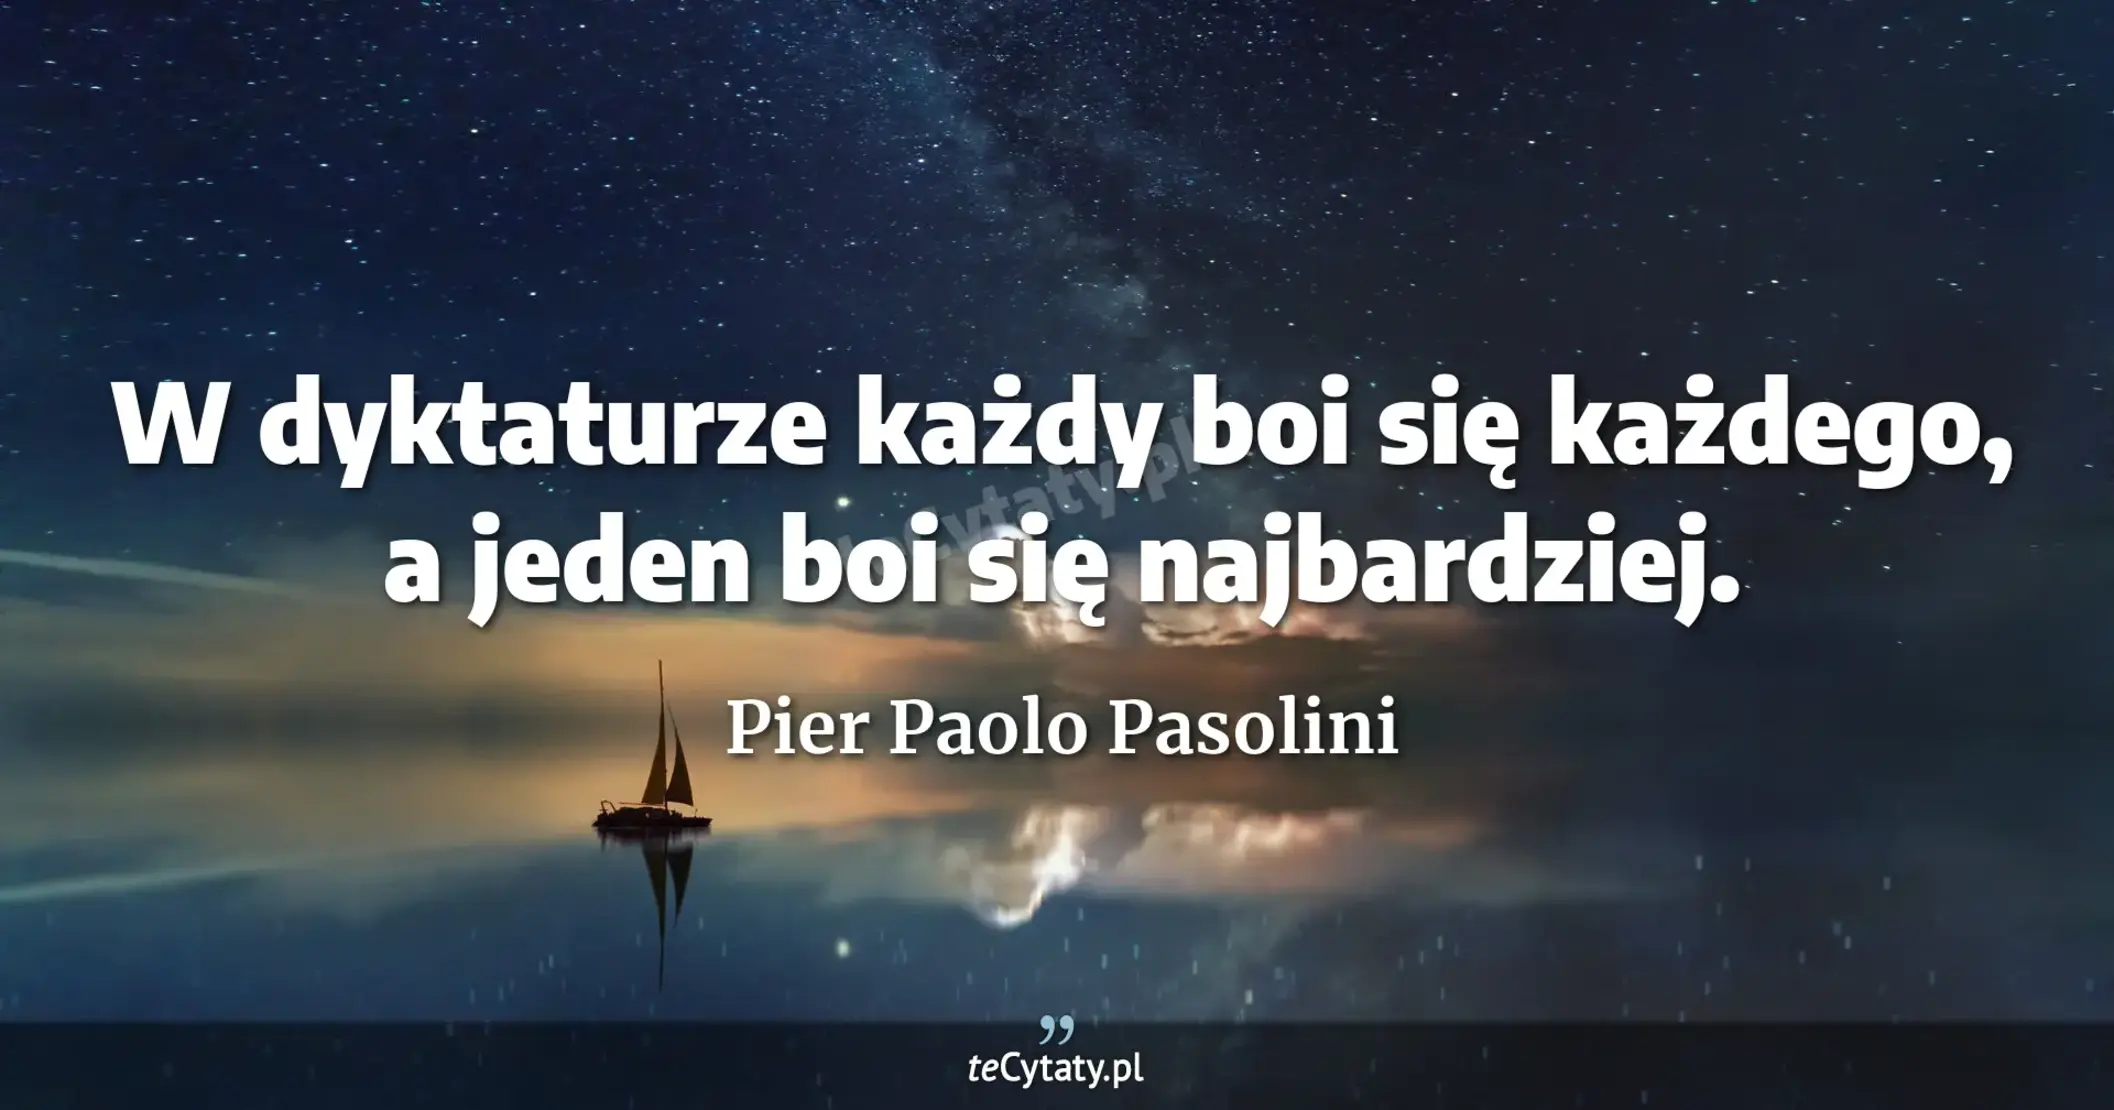 W dyktaturze każdy boi się każdego, a jeden boi się najbardziej. - Pier Paolo Pasolini